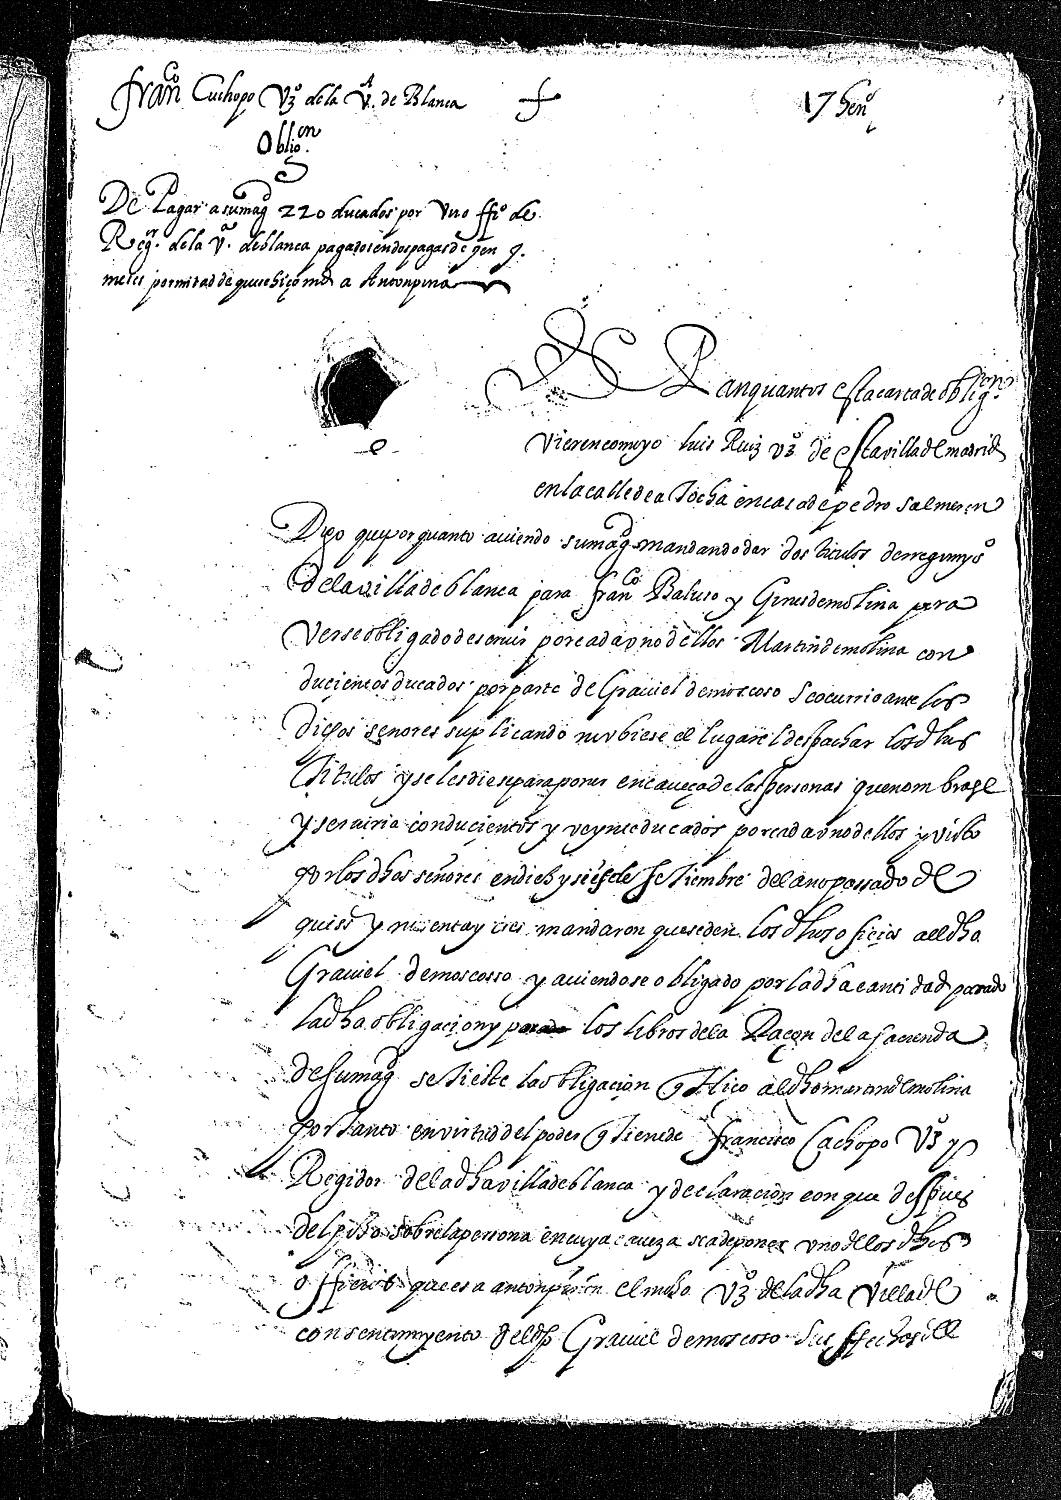 Carta de obligación de Luis Ruiz, vecino de Madrid, en nombre de Francisco Cachopo, para pagar 220 ducados por un oficio de regidor de la villa de Blanca, concedido a Antonio Pinar.